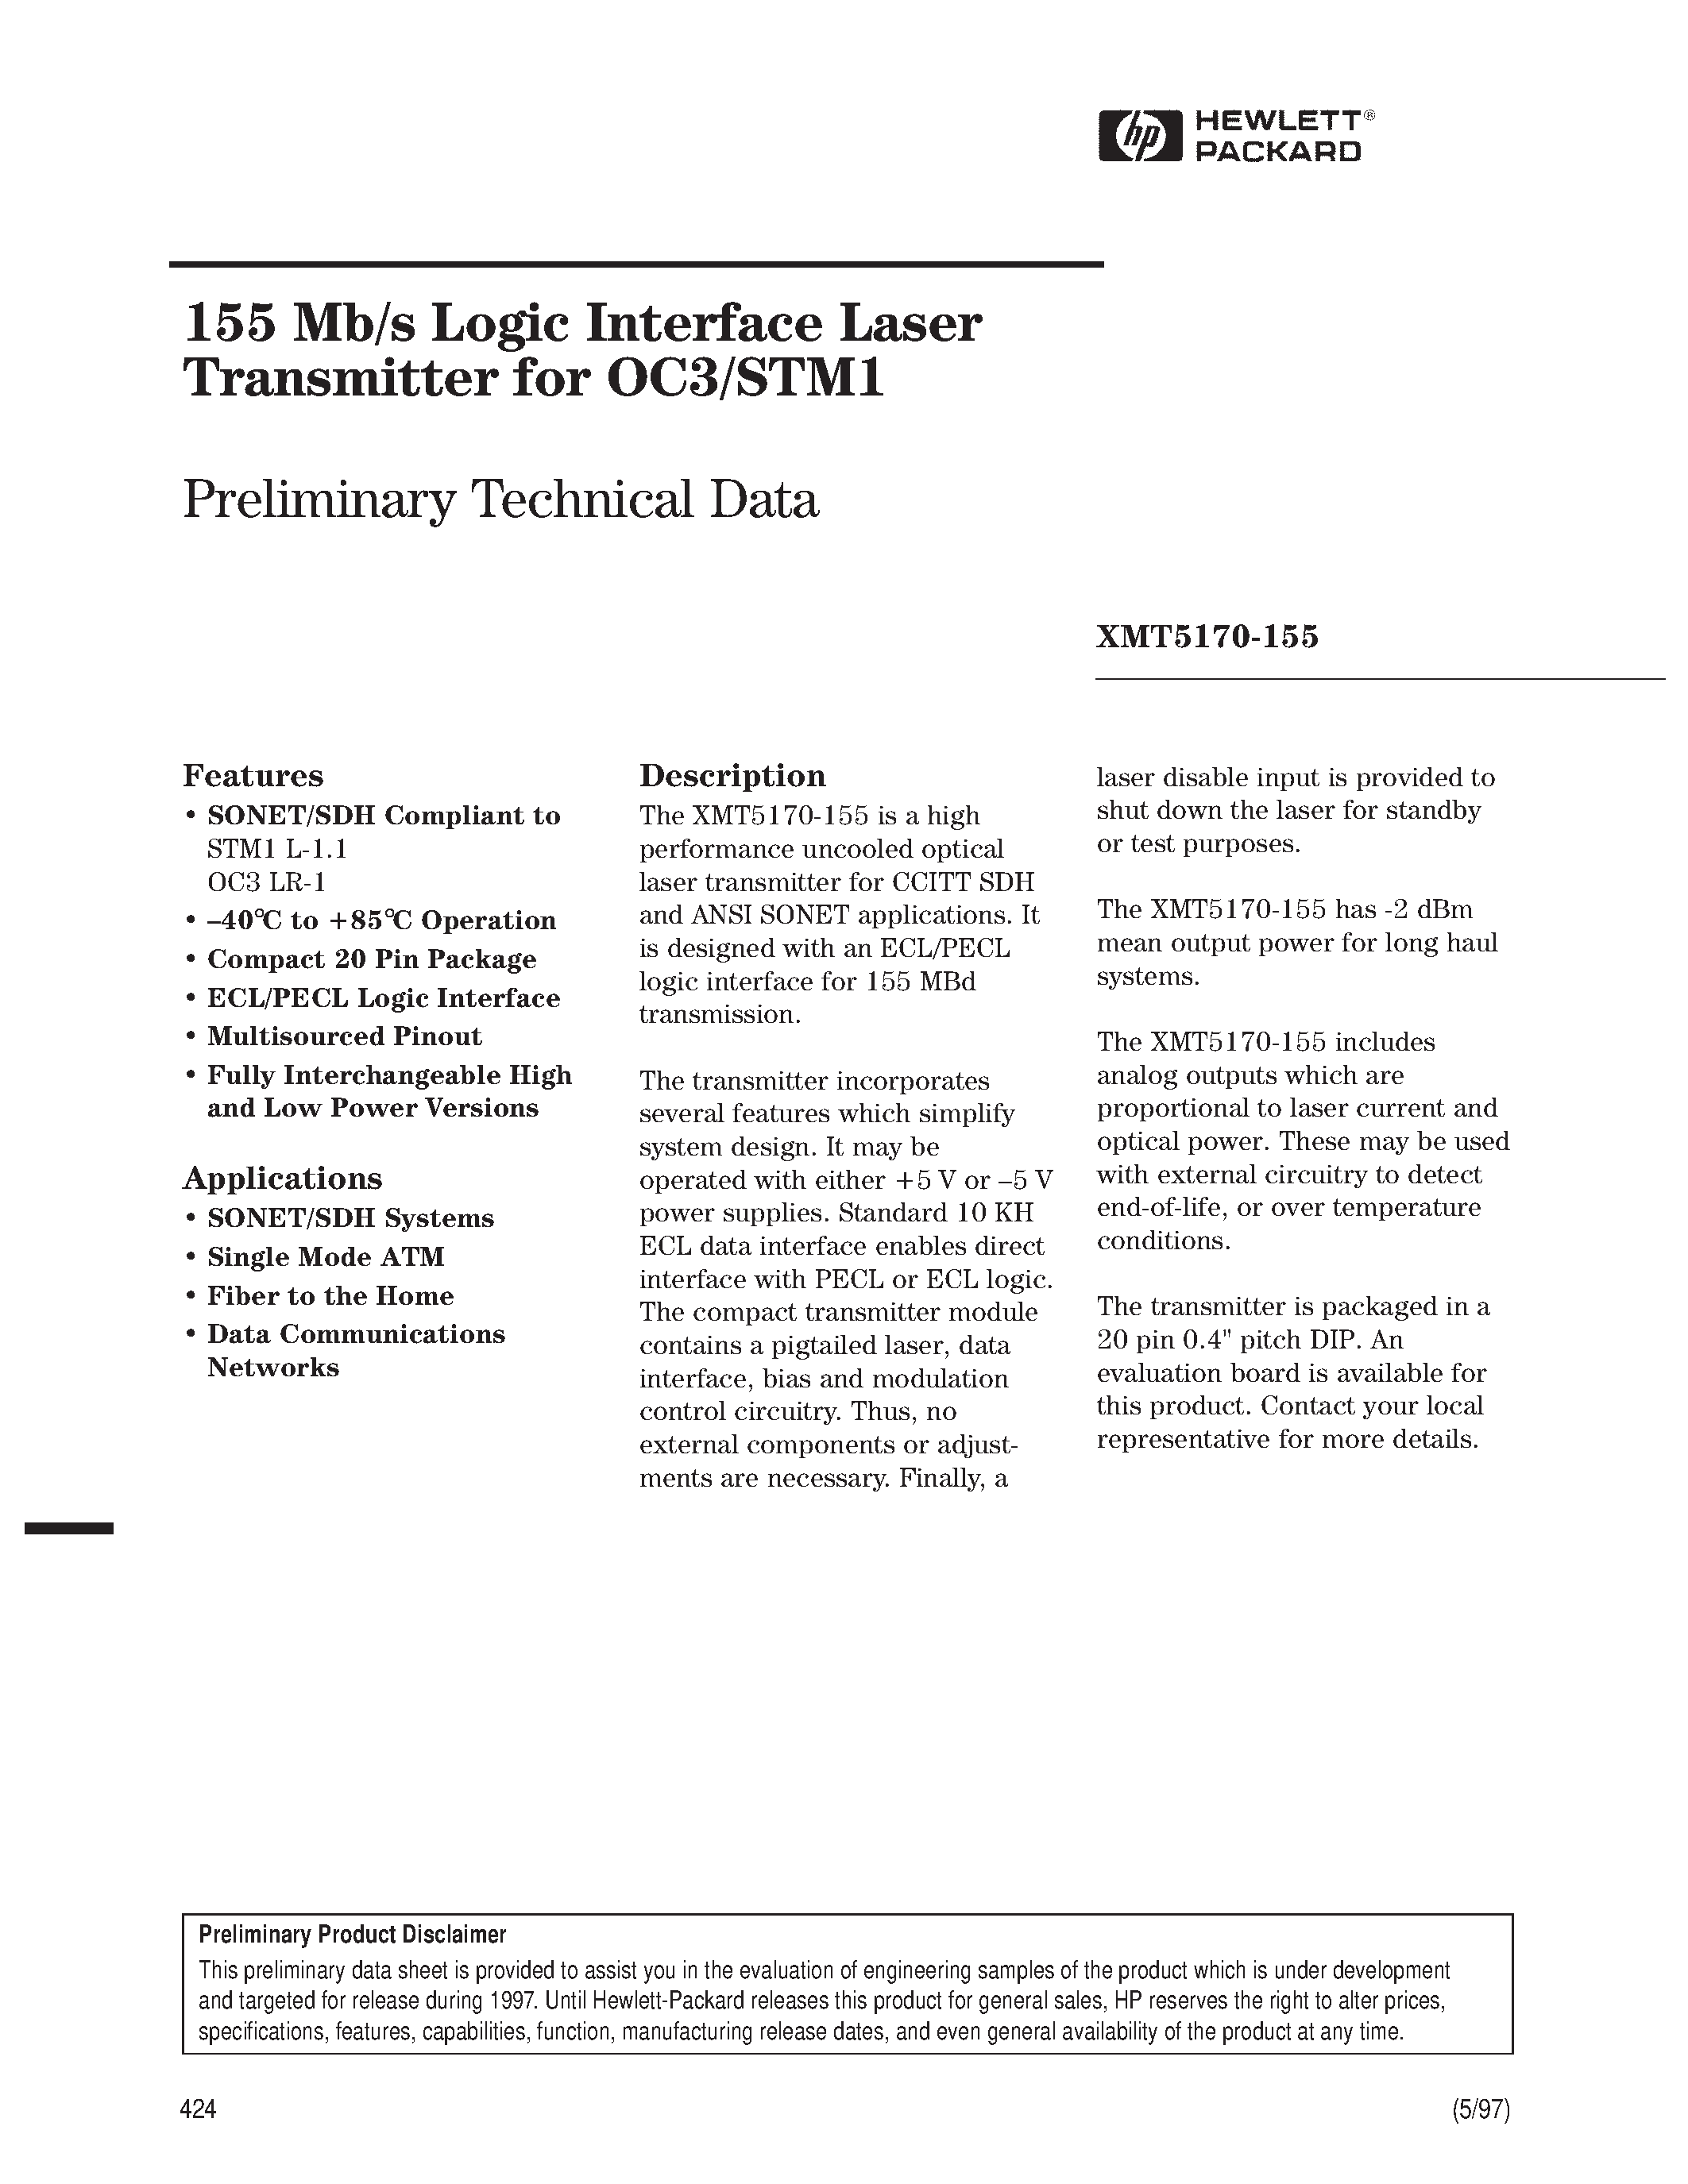 Даташит XMT5170A-155-ST - 155 Mb/s Logic Interface Laser Transmitter for OC3/STM1 страница 1